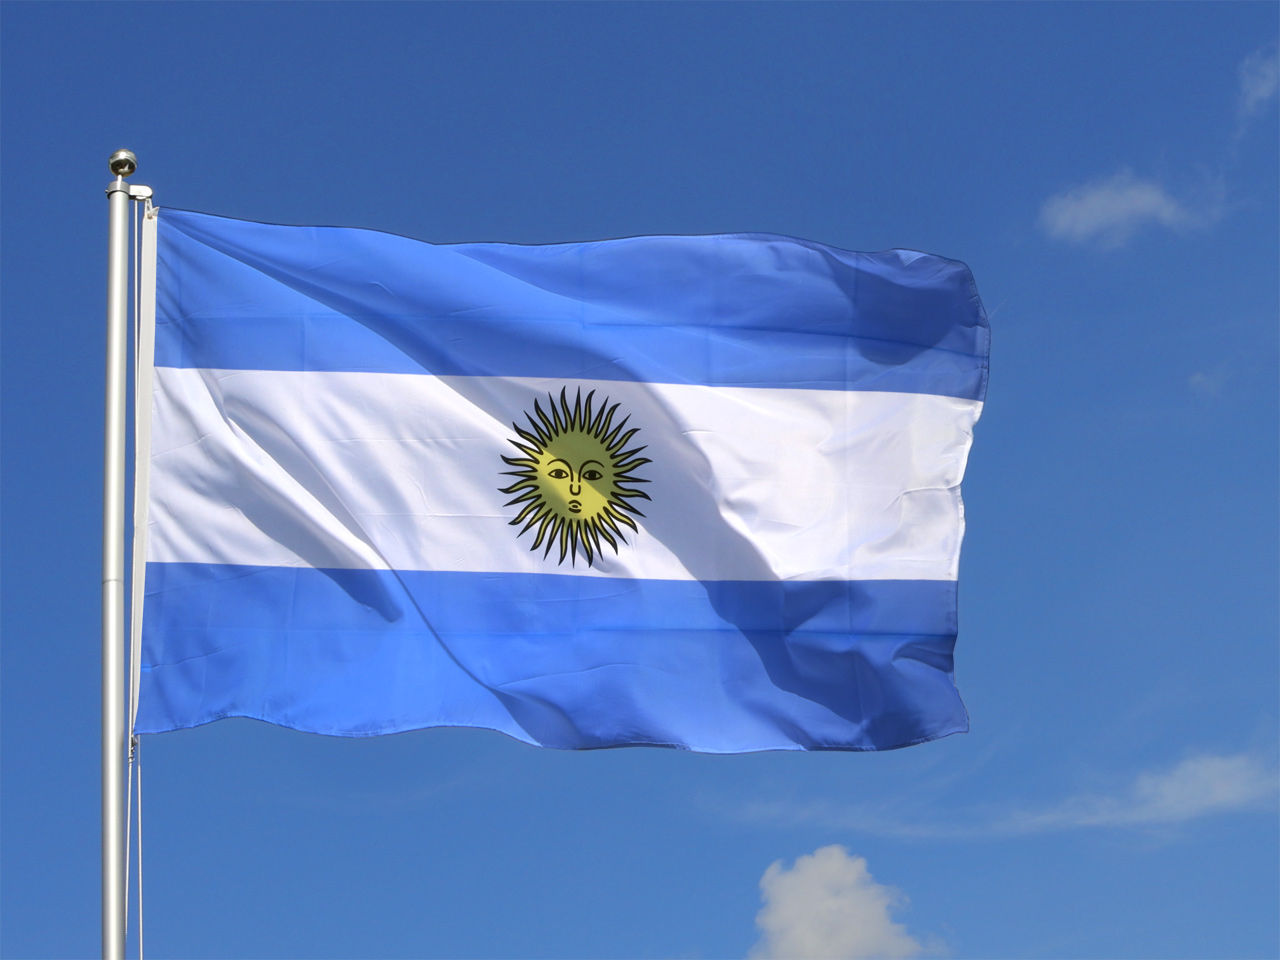 Argentinien Flagge 250x150 cm wetterfest Fahne Ösen Innen Außen große Hissflagge